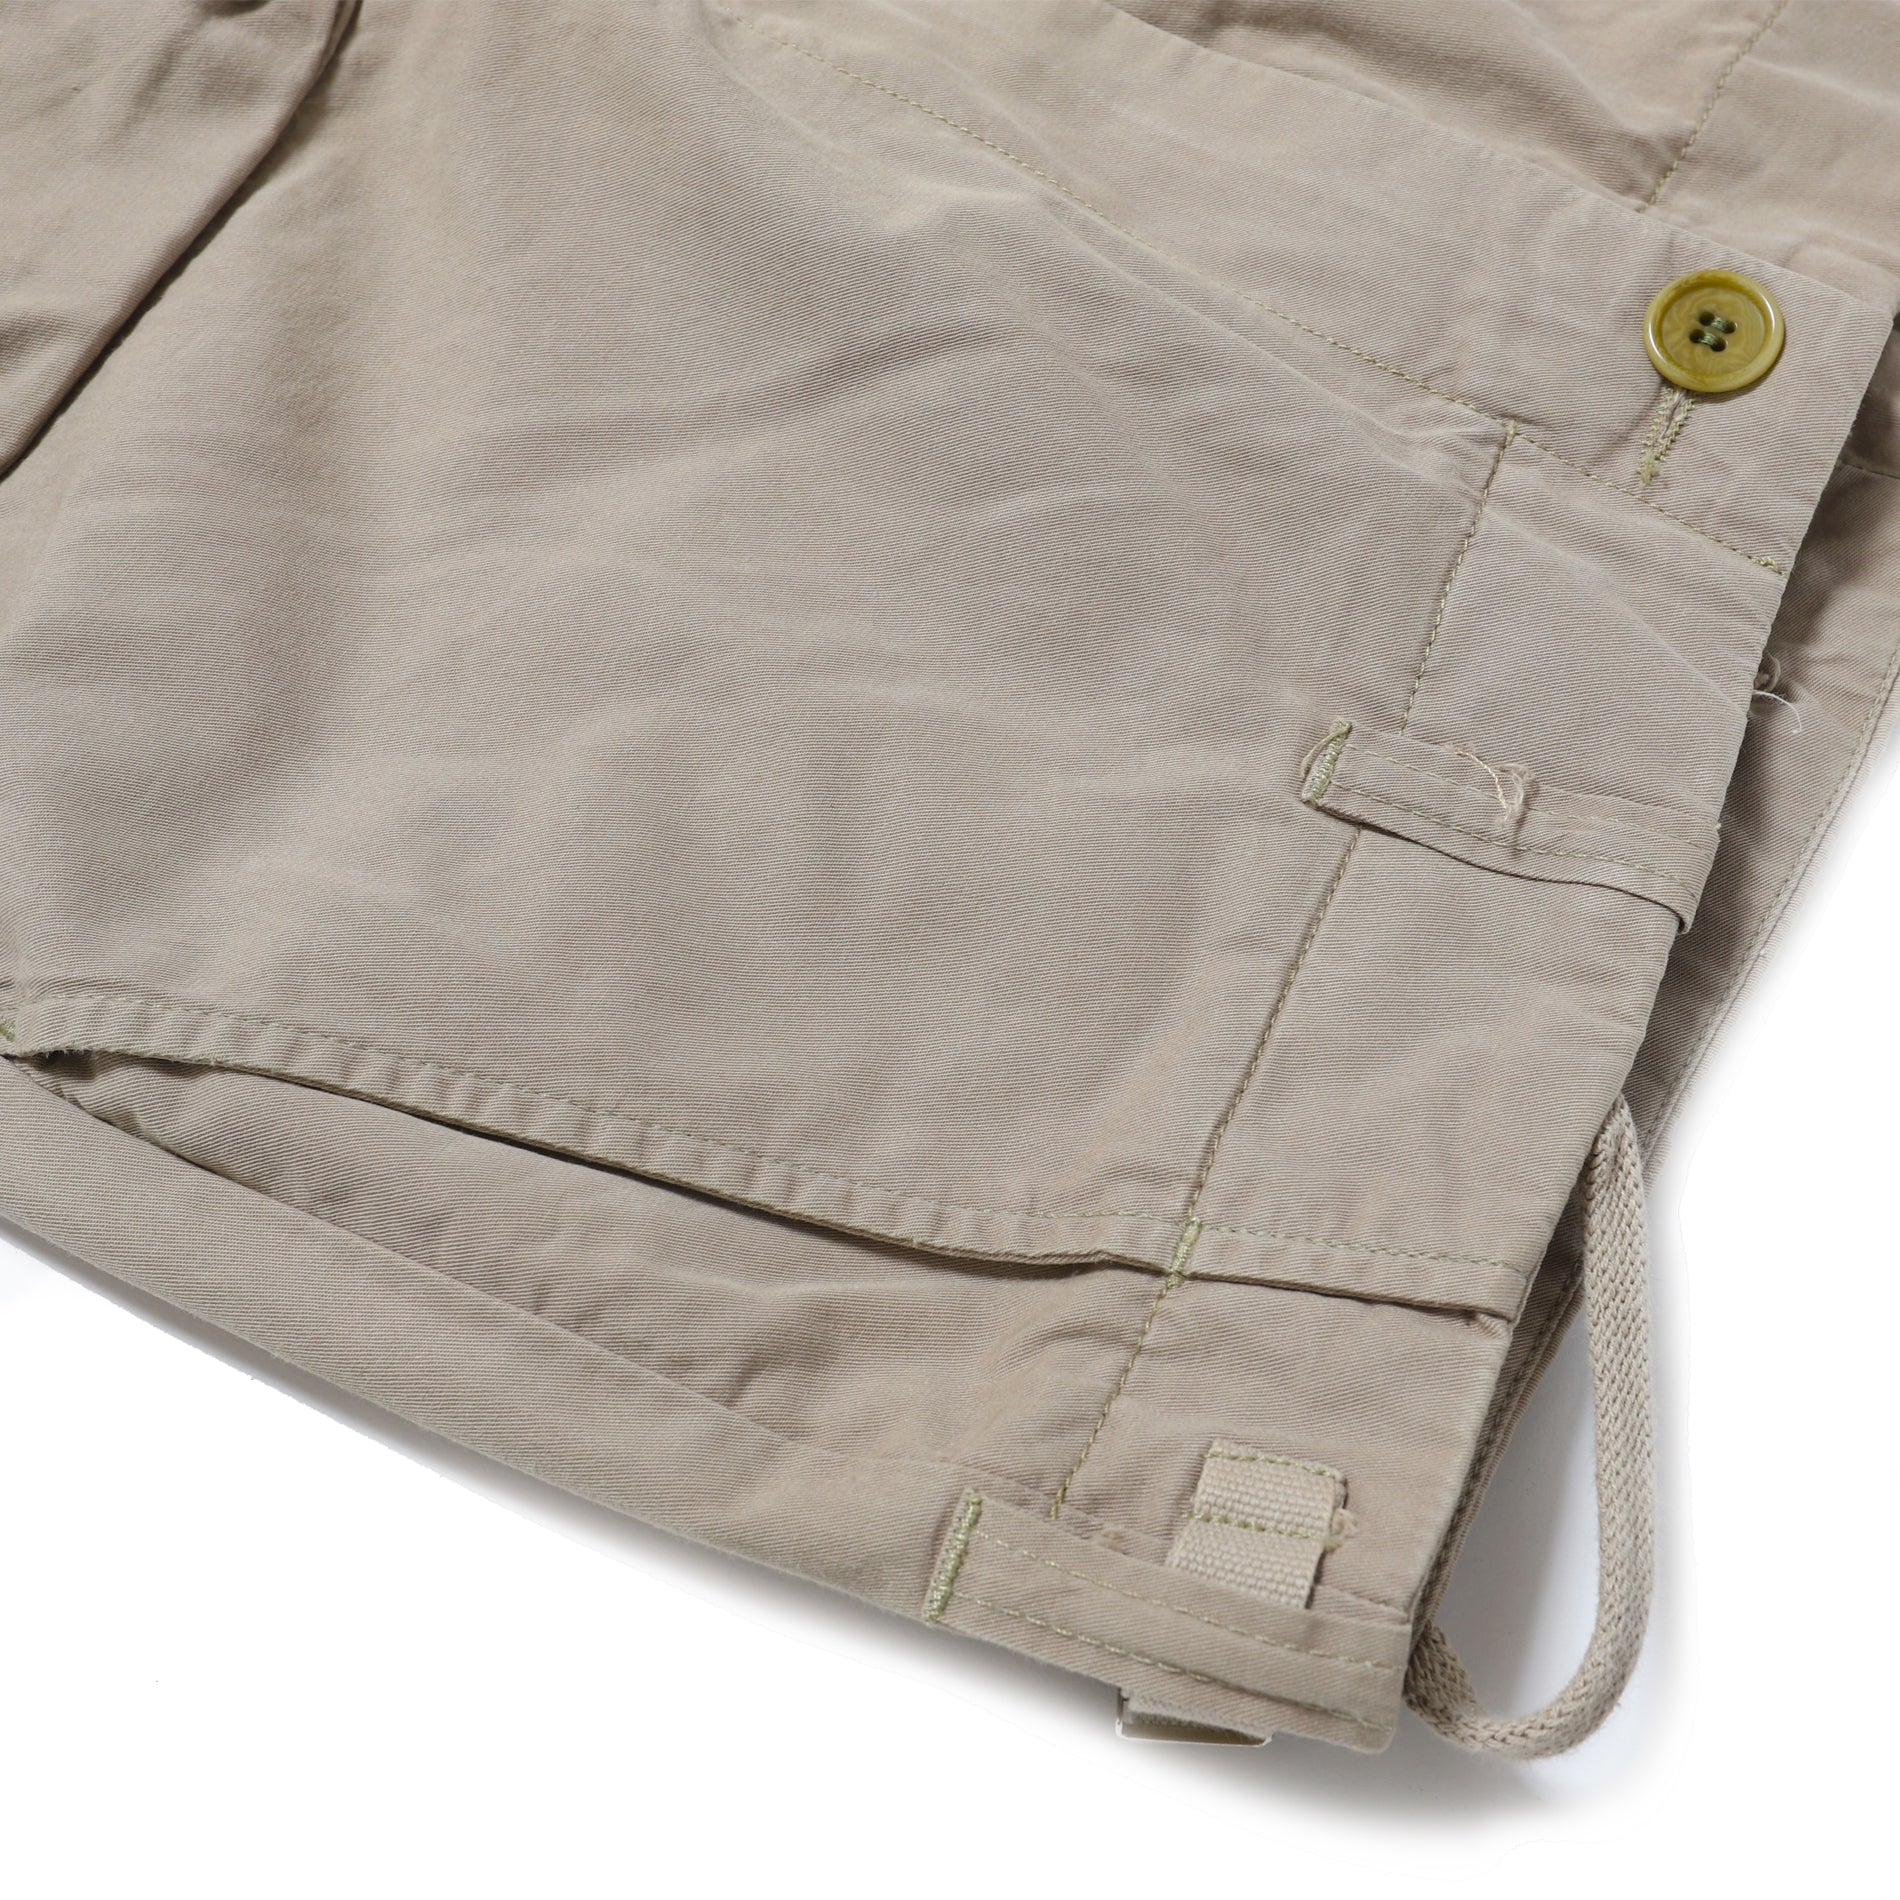 3D Pocket Cargo Pants